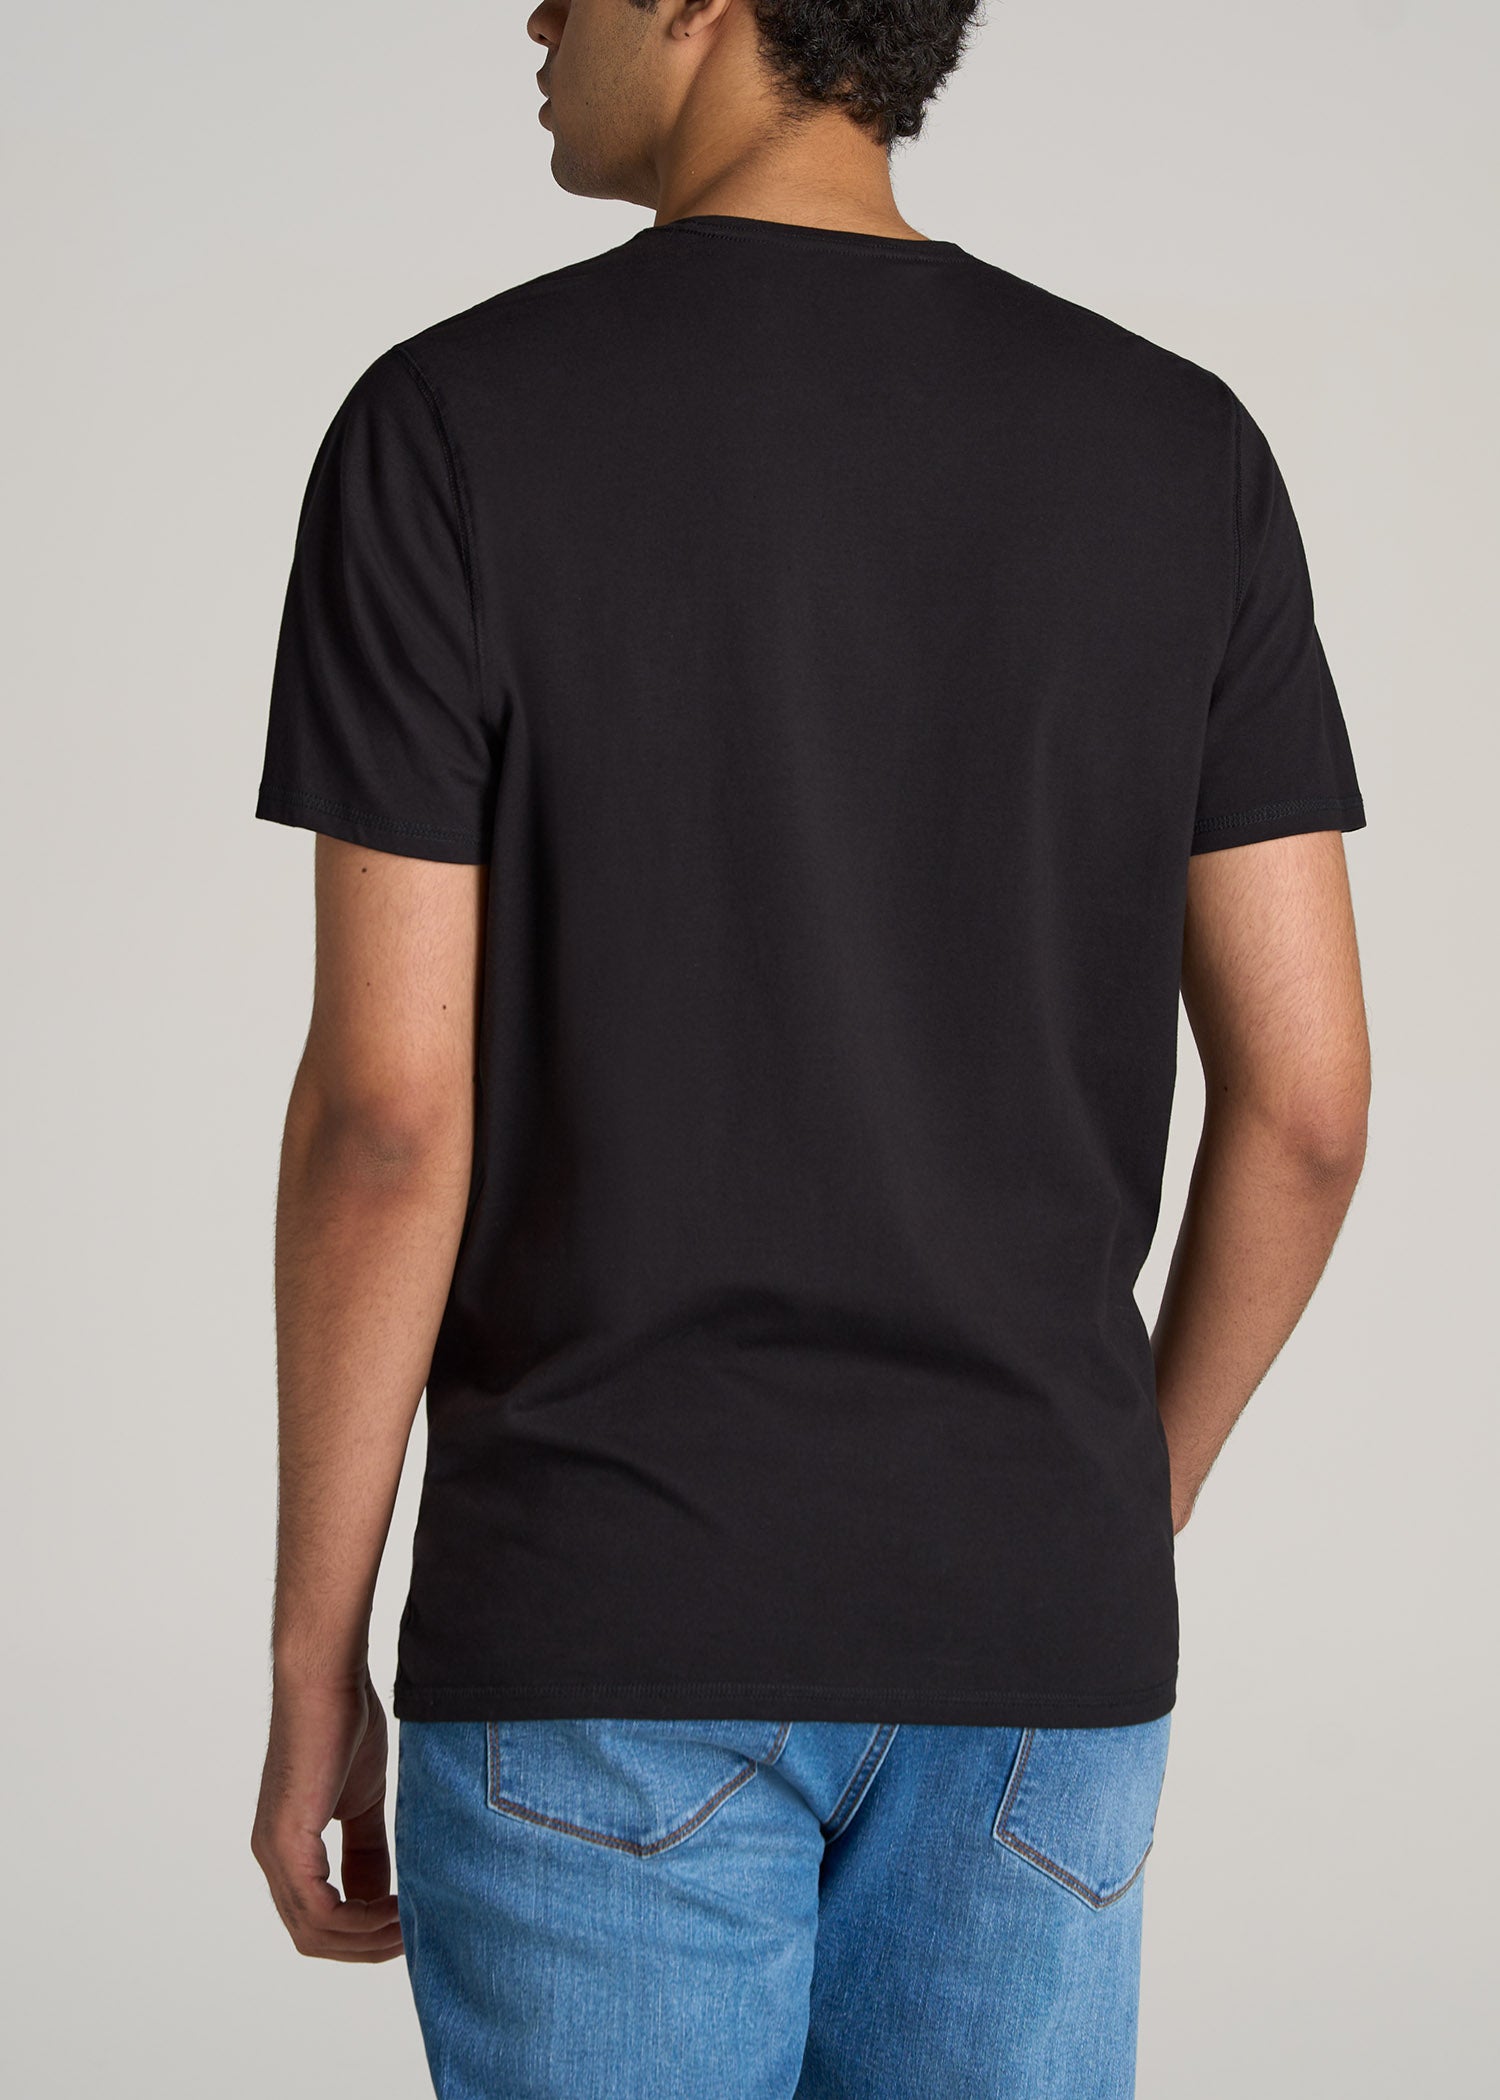 Tall Black T-shirt: Regular Fit Crew Men's Black Tee | American Tall